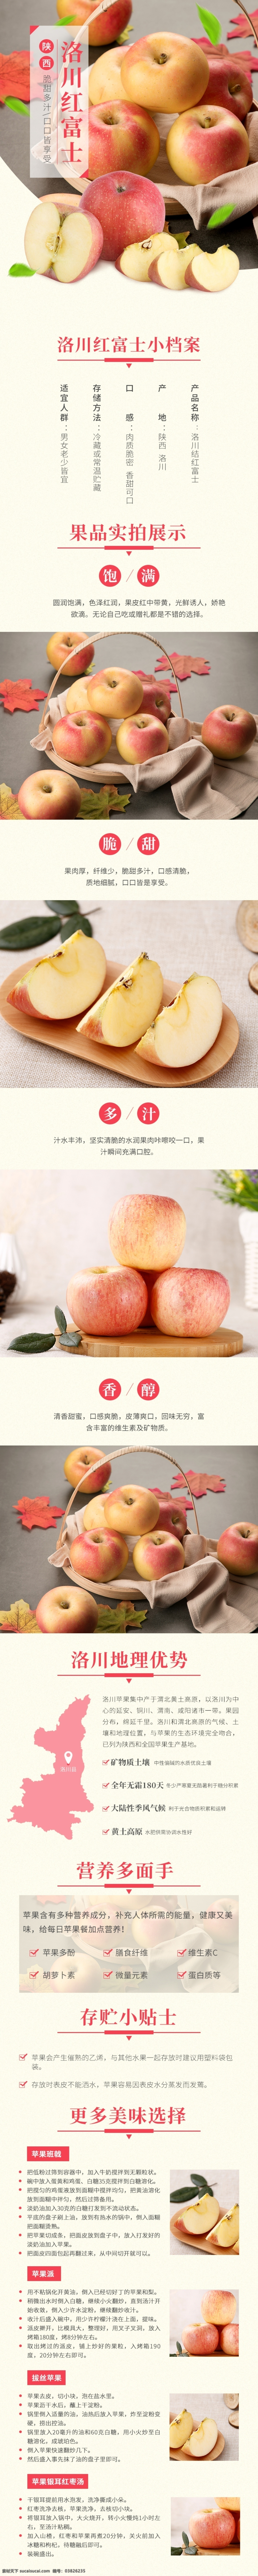 电商 淘宝 新鲜 水果 美食 洛川 红富士 苹果 详情 页 新鲜水果 详情页